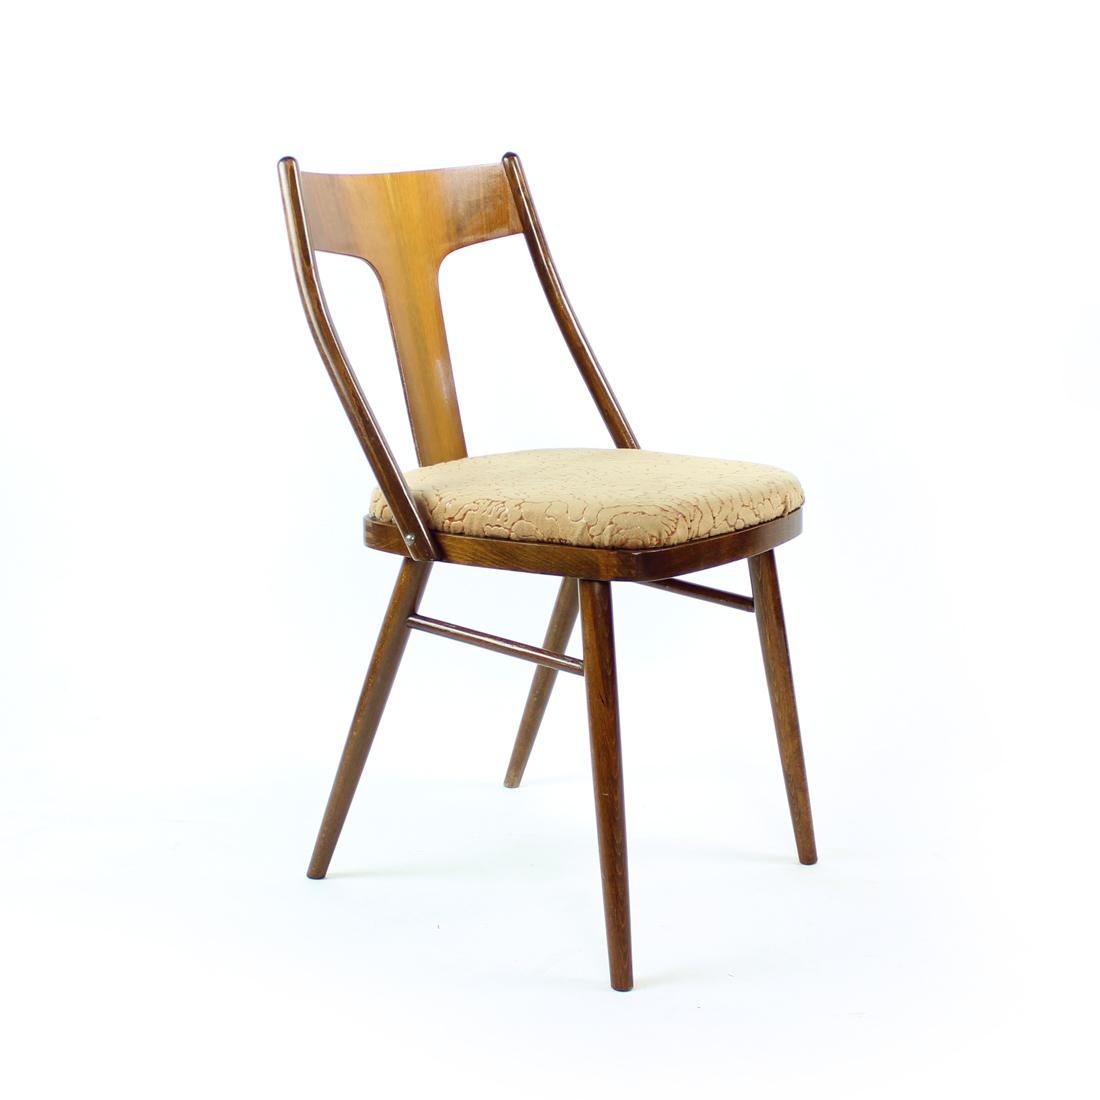 Schöner Satz eleganter Esszimmerstühle aus der Mitte des Jahrhunderts. Produziert in den 1960er Jahren in der Tschechoslowakei. Die Stühle haben eine starke Eichenholzkonstruktion mit einer eleganten Rückenlehne in T-Form mit Walnussfurnier.